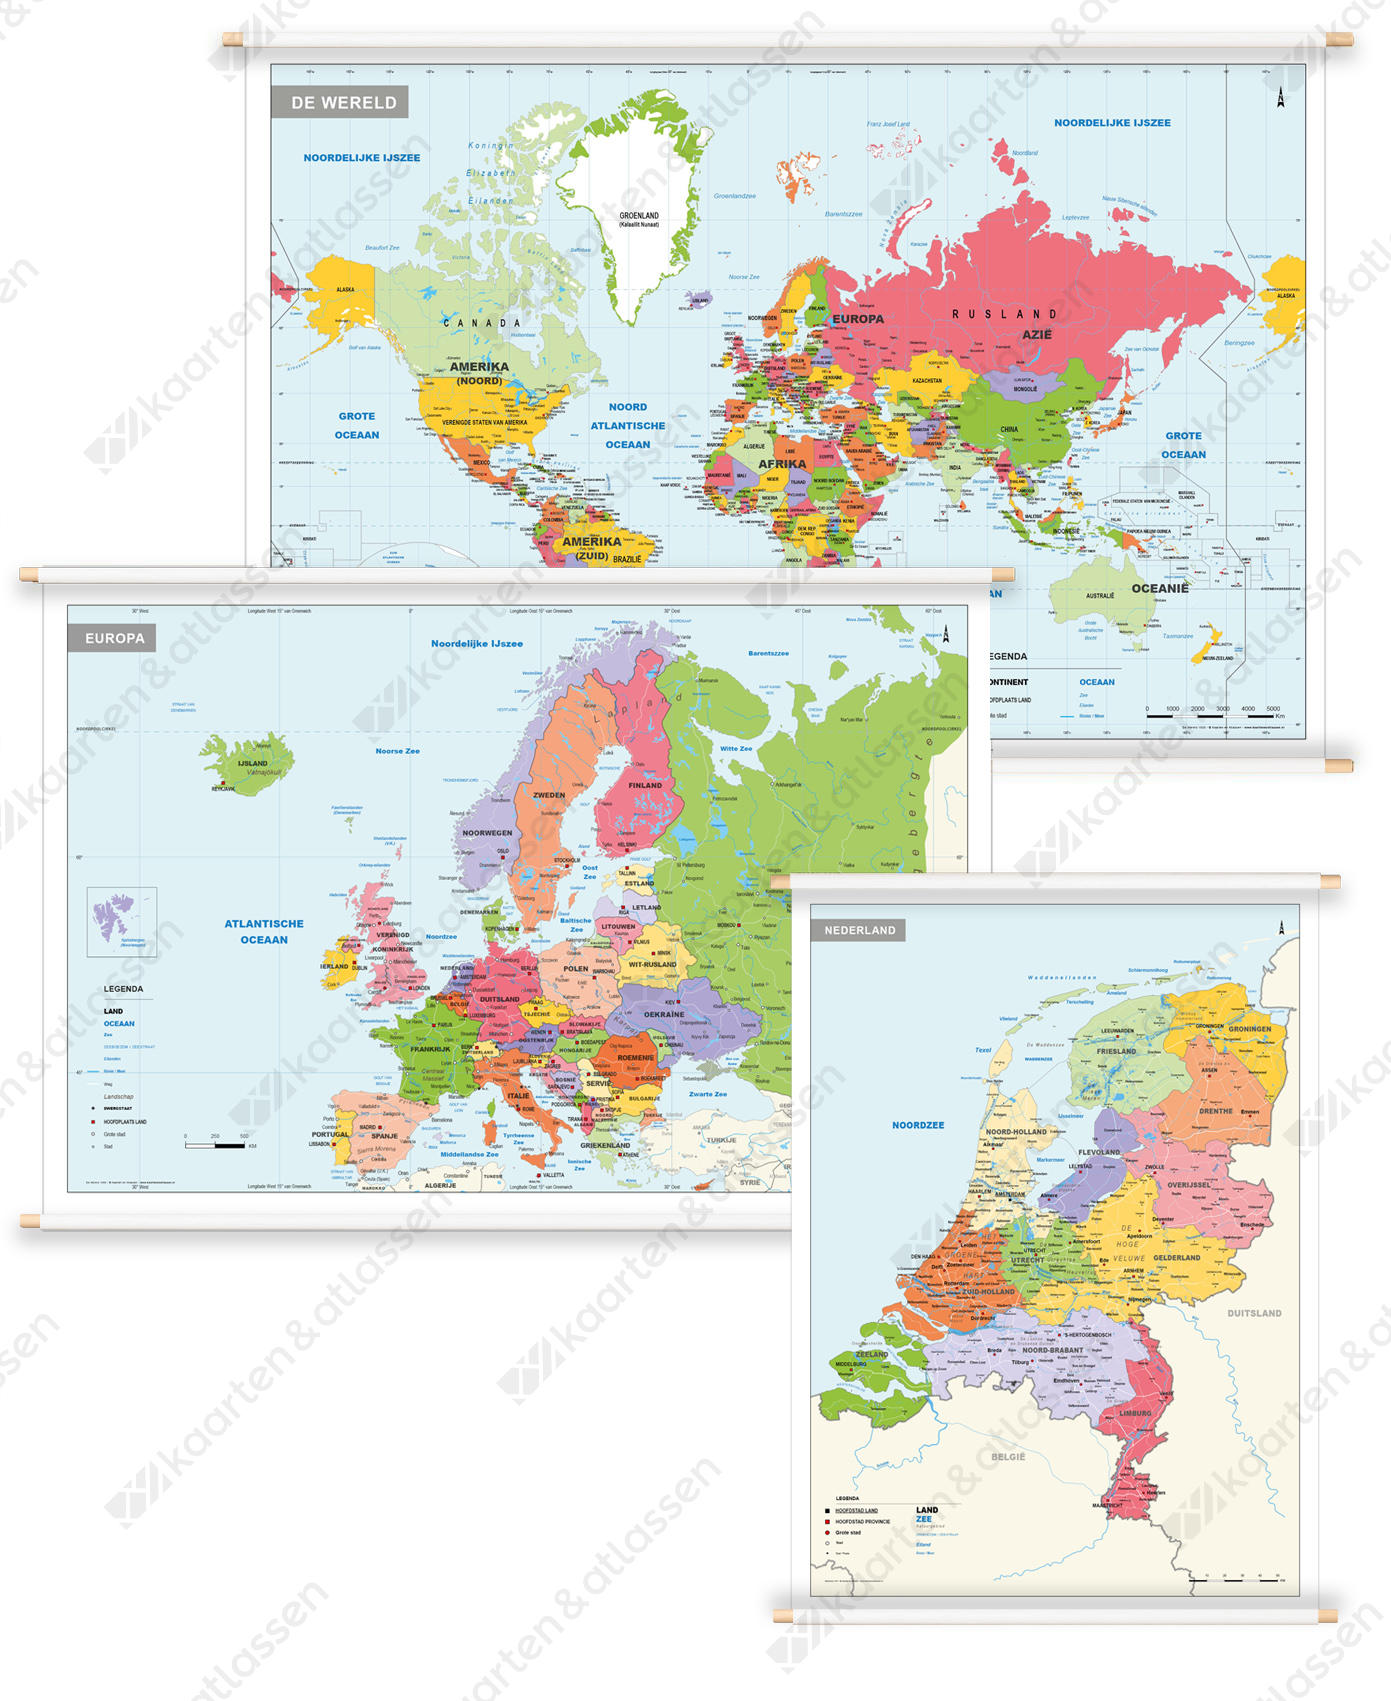 3 Schoolkaarten Nederland/Europa/Wereld Gedetailleerd